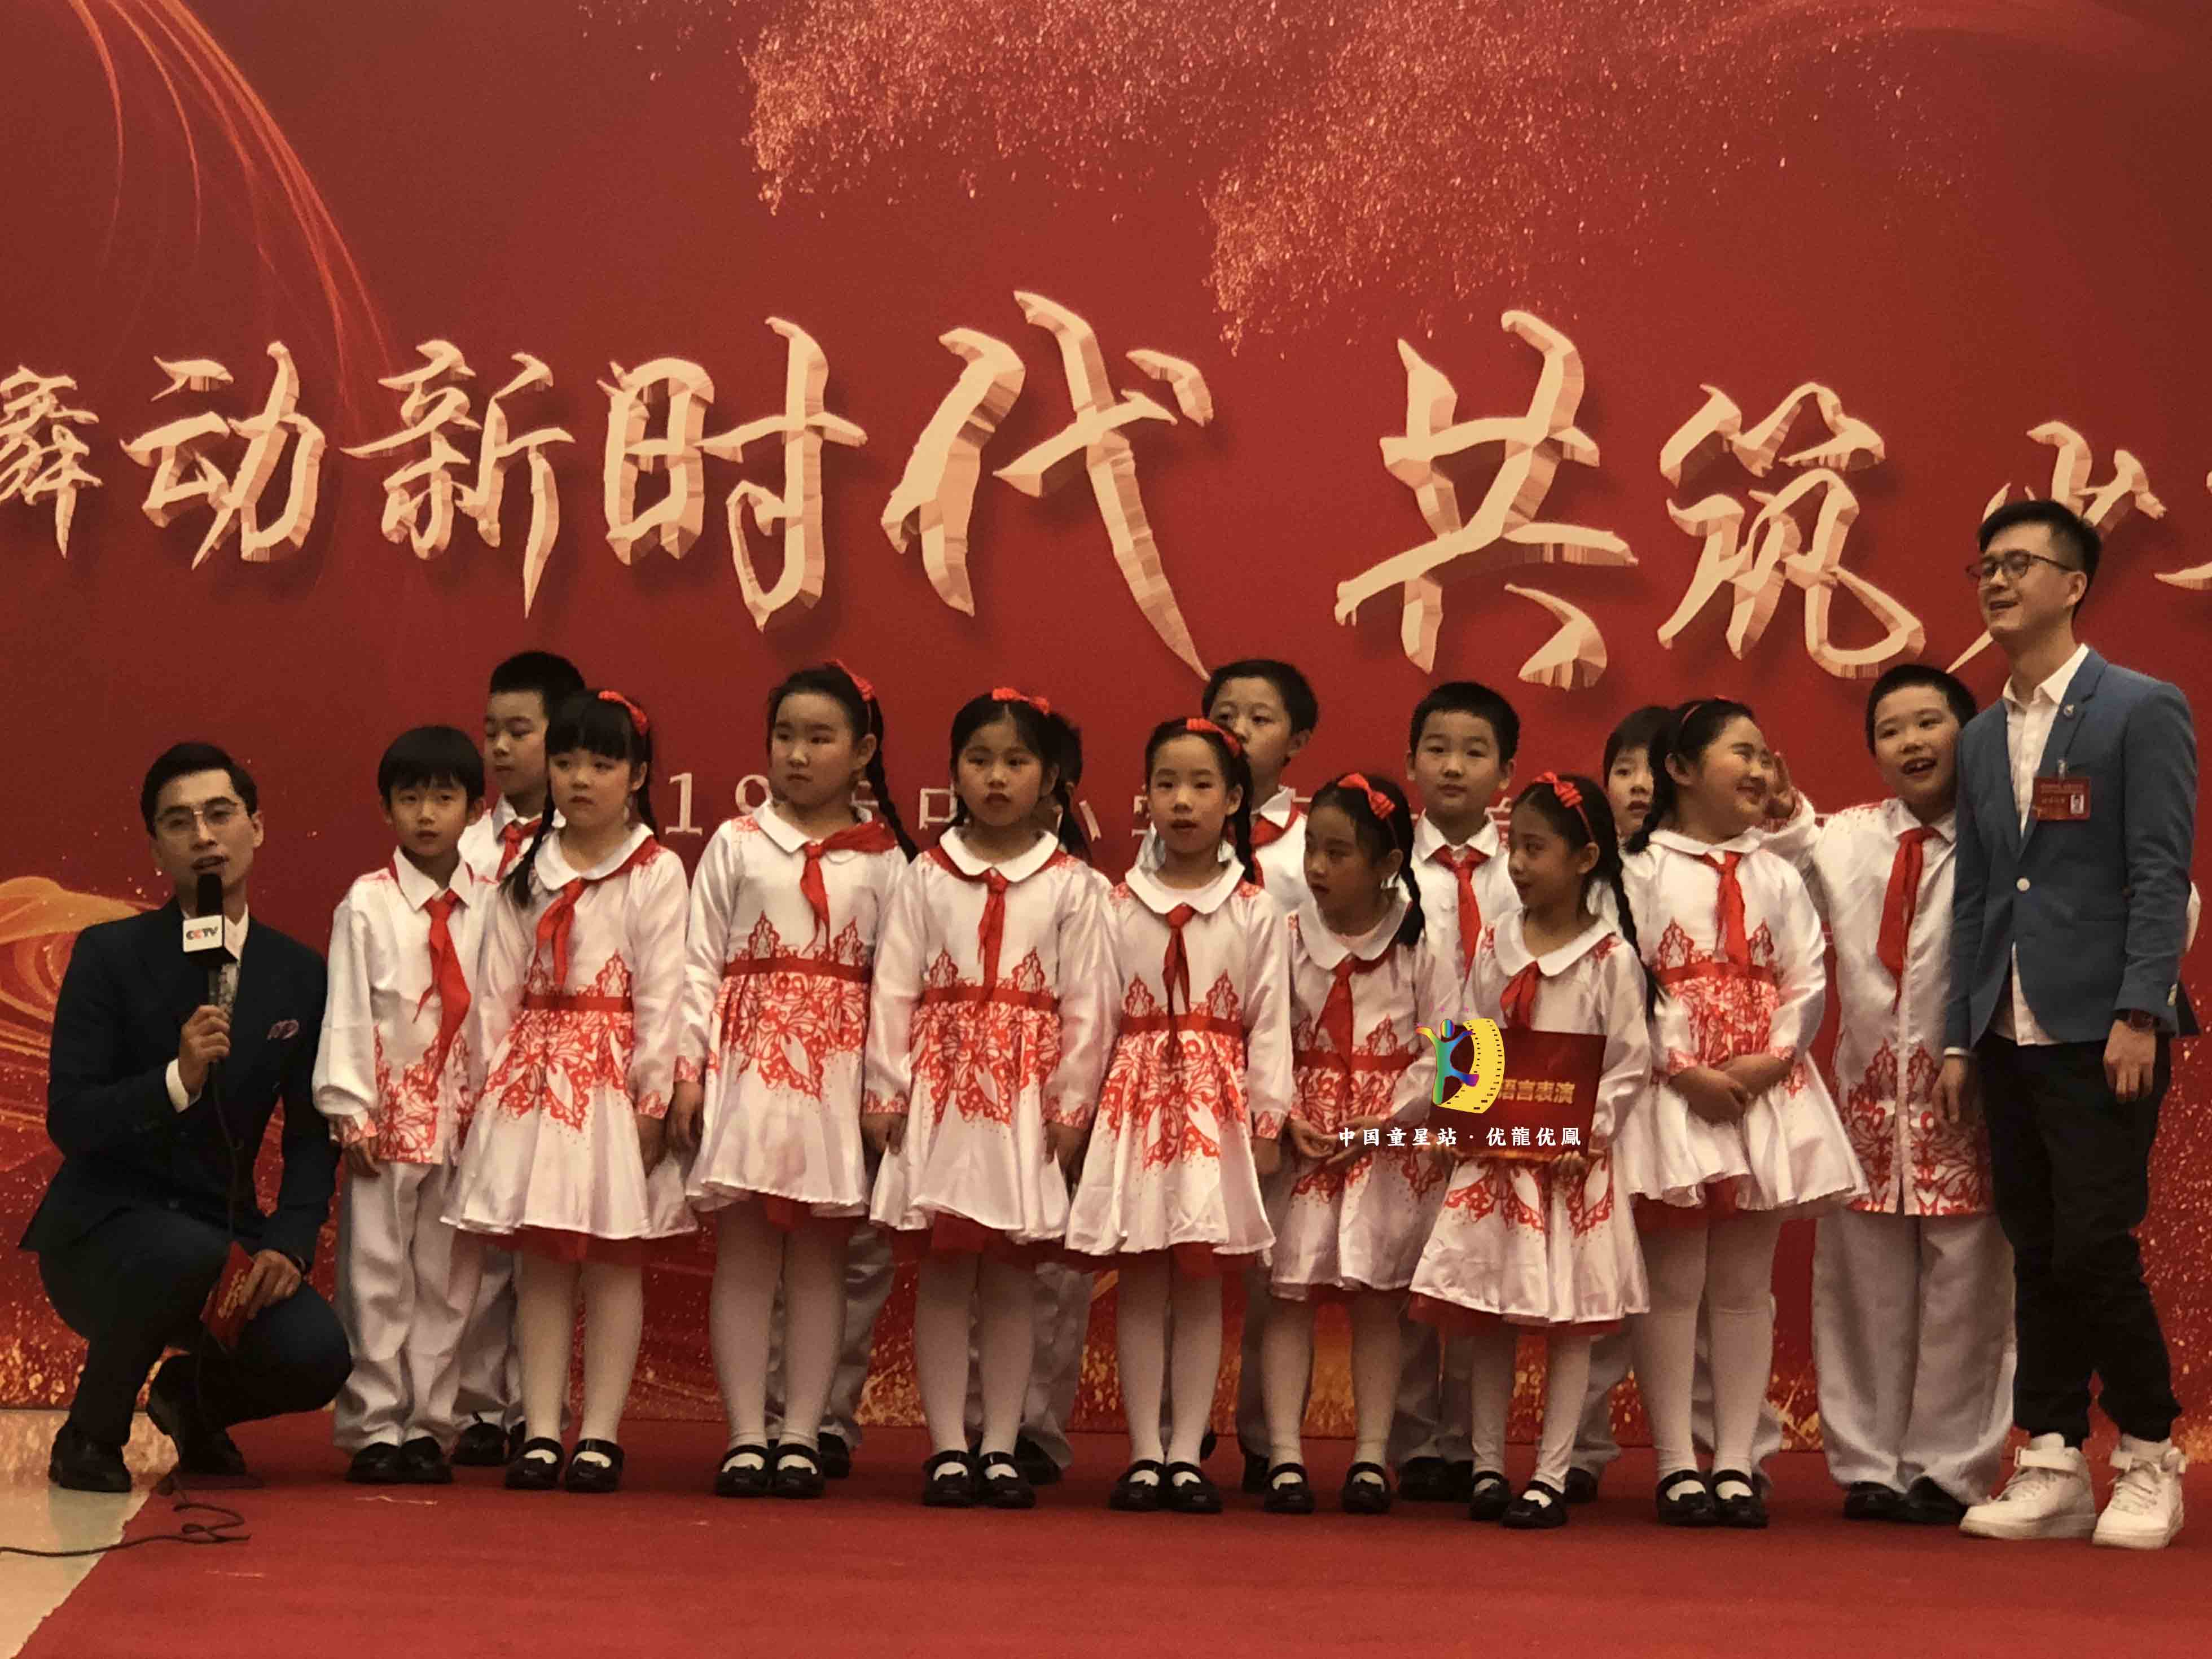 北京代表团在人民大会堂舞台上表演的朗诵《祖国环保好少年》下面是部分花絮